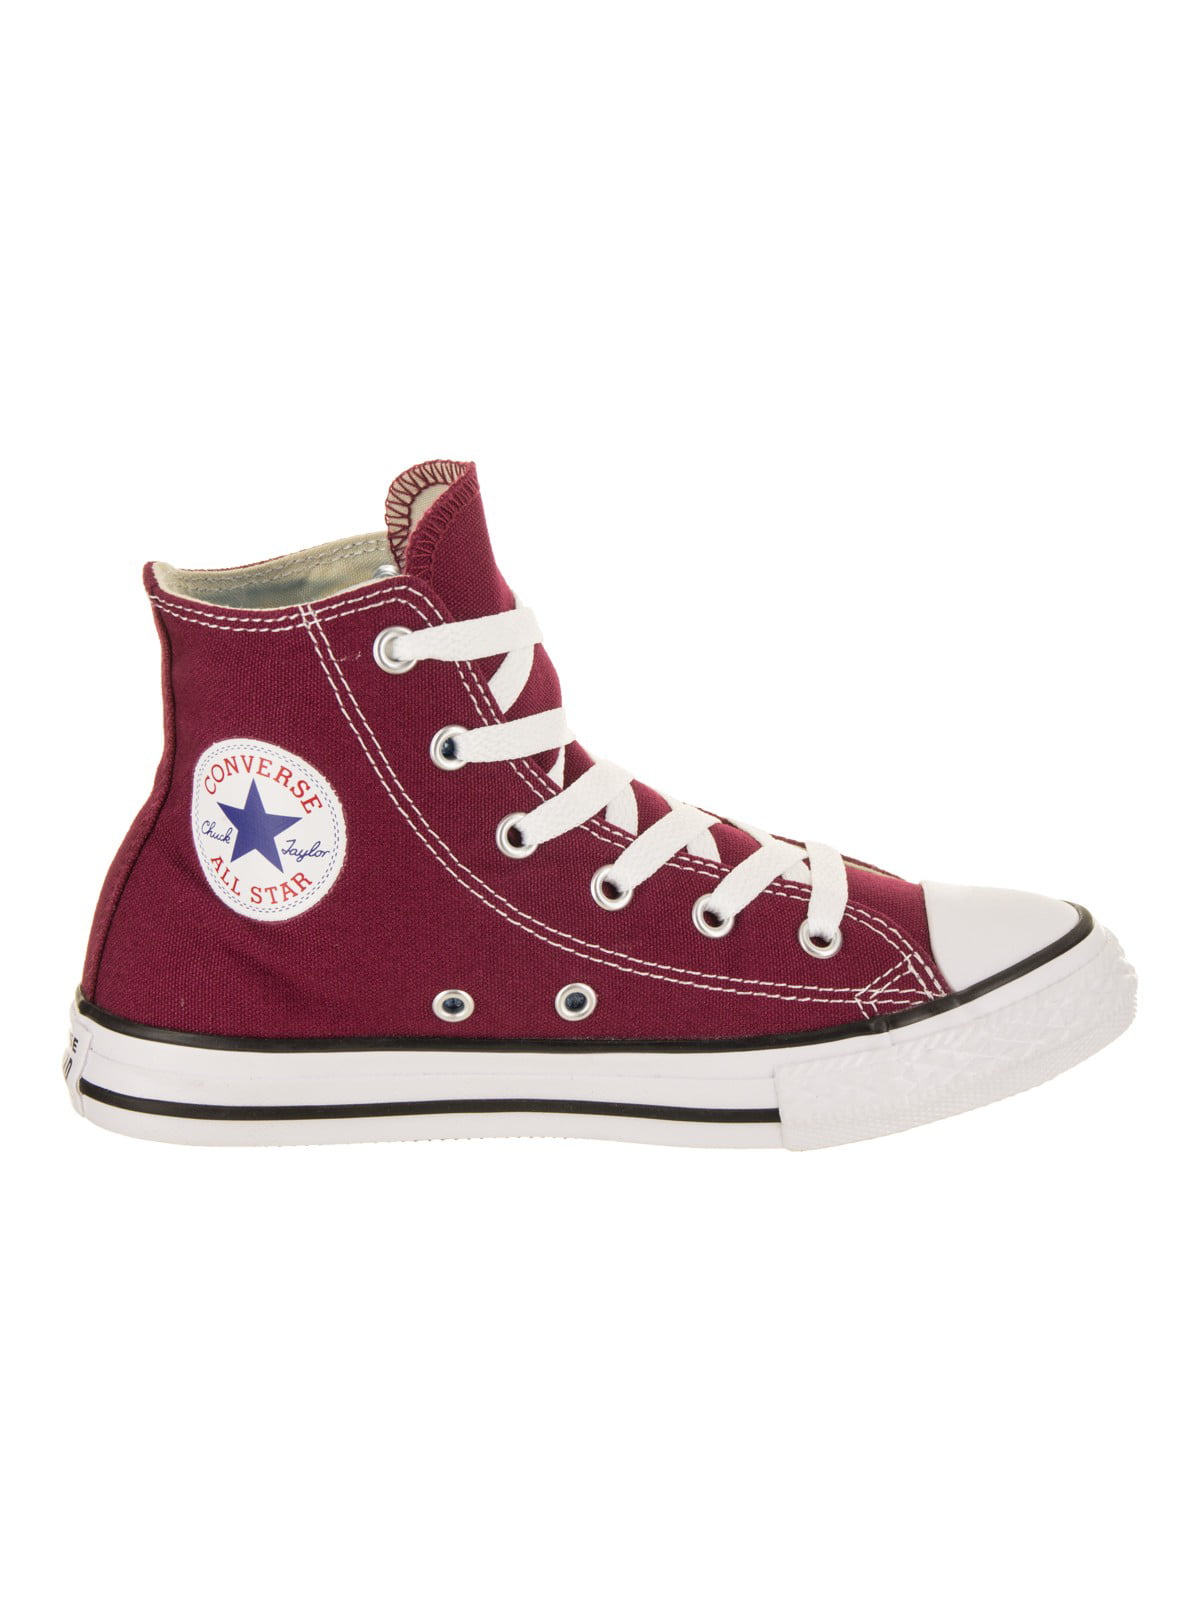 Converse Chuck Star Hi Little Kids' Shoes 348437f - Walmart.com